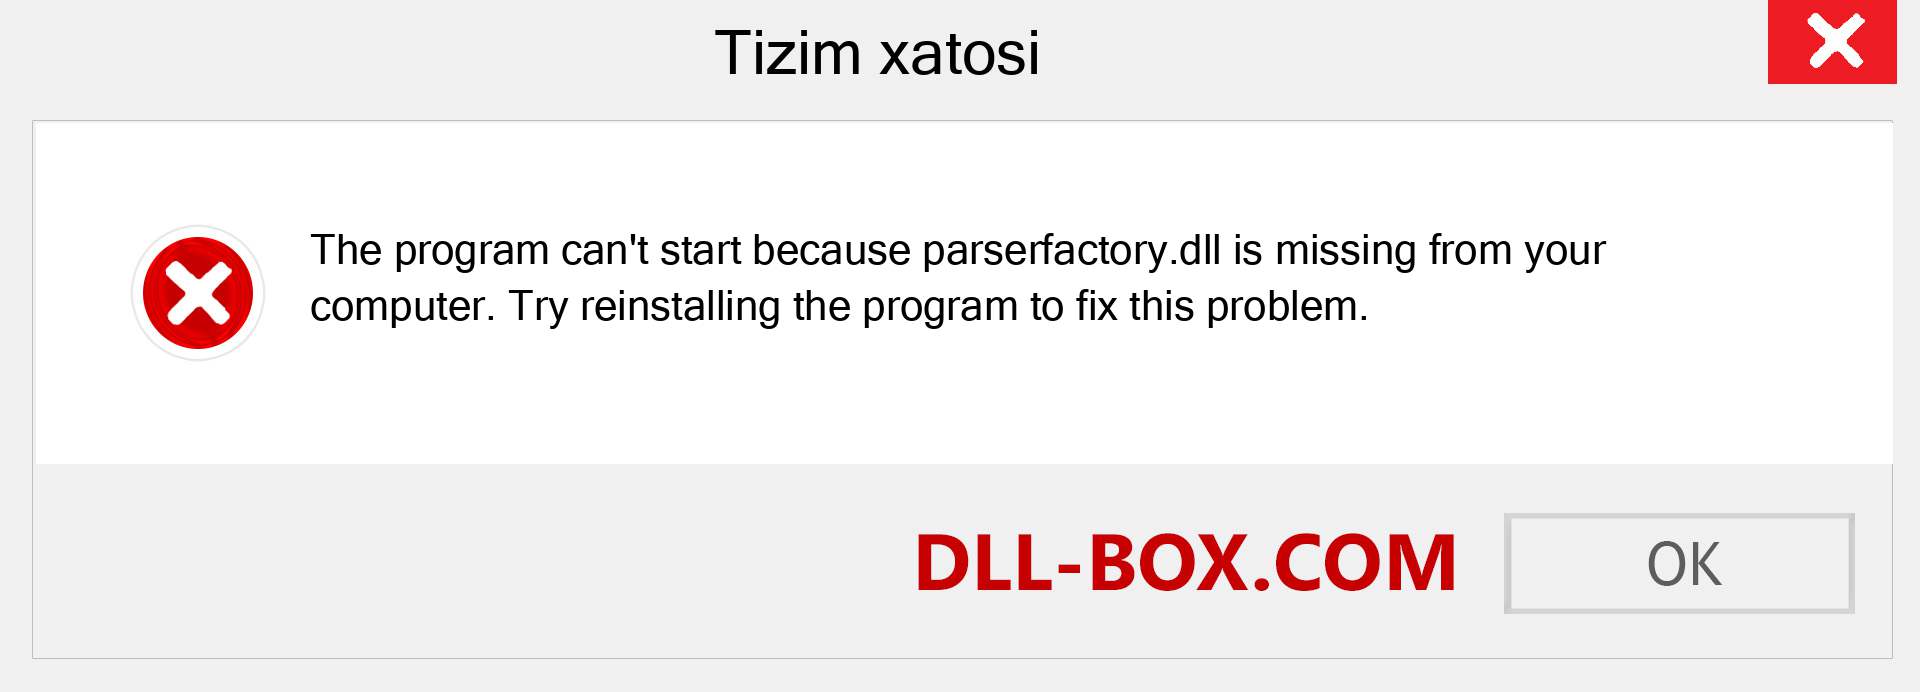 parserfactory.dll fayli yo'qolganmi?. Windows 7, 8, 10 uchun yuklab olish - Windowsda parserfactory dll etishmayotgan xatoni tuzating, rasmlar, rasmlar